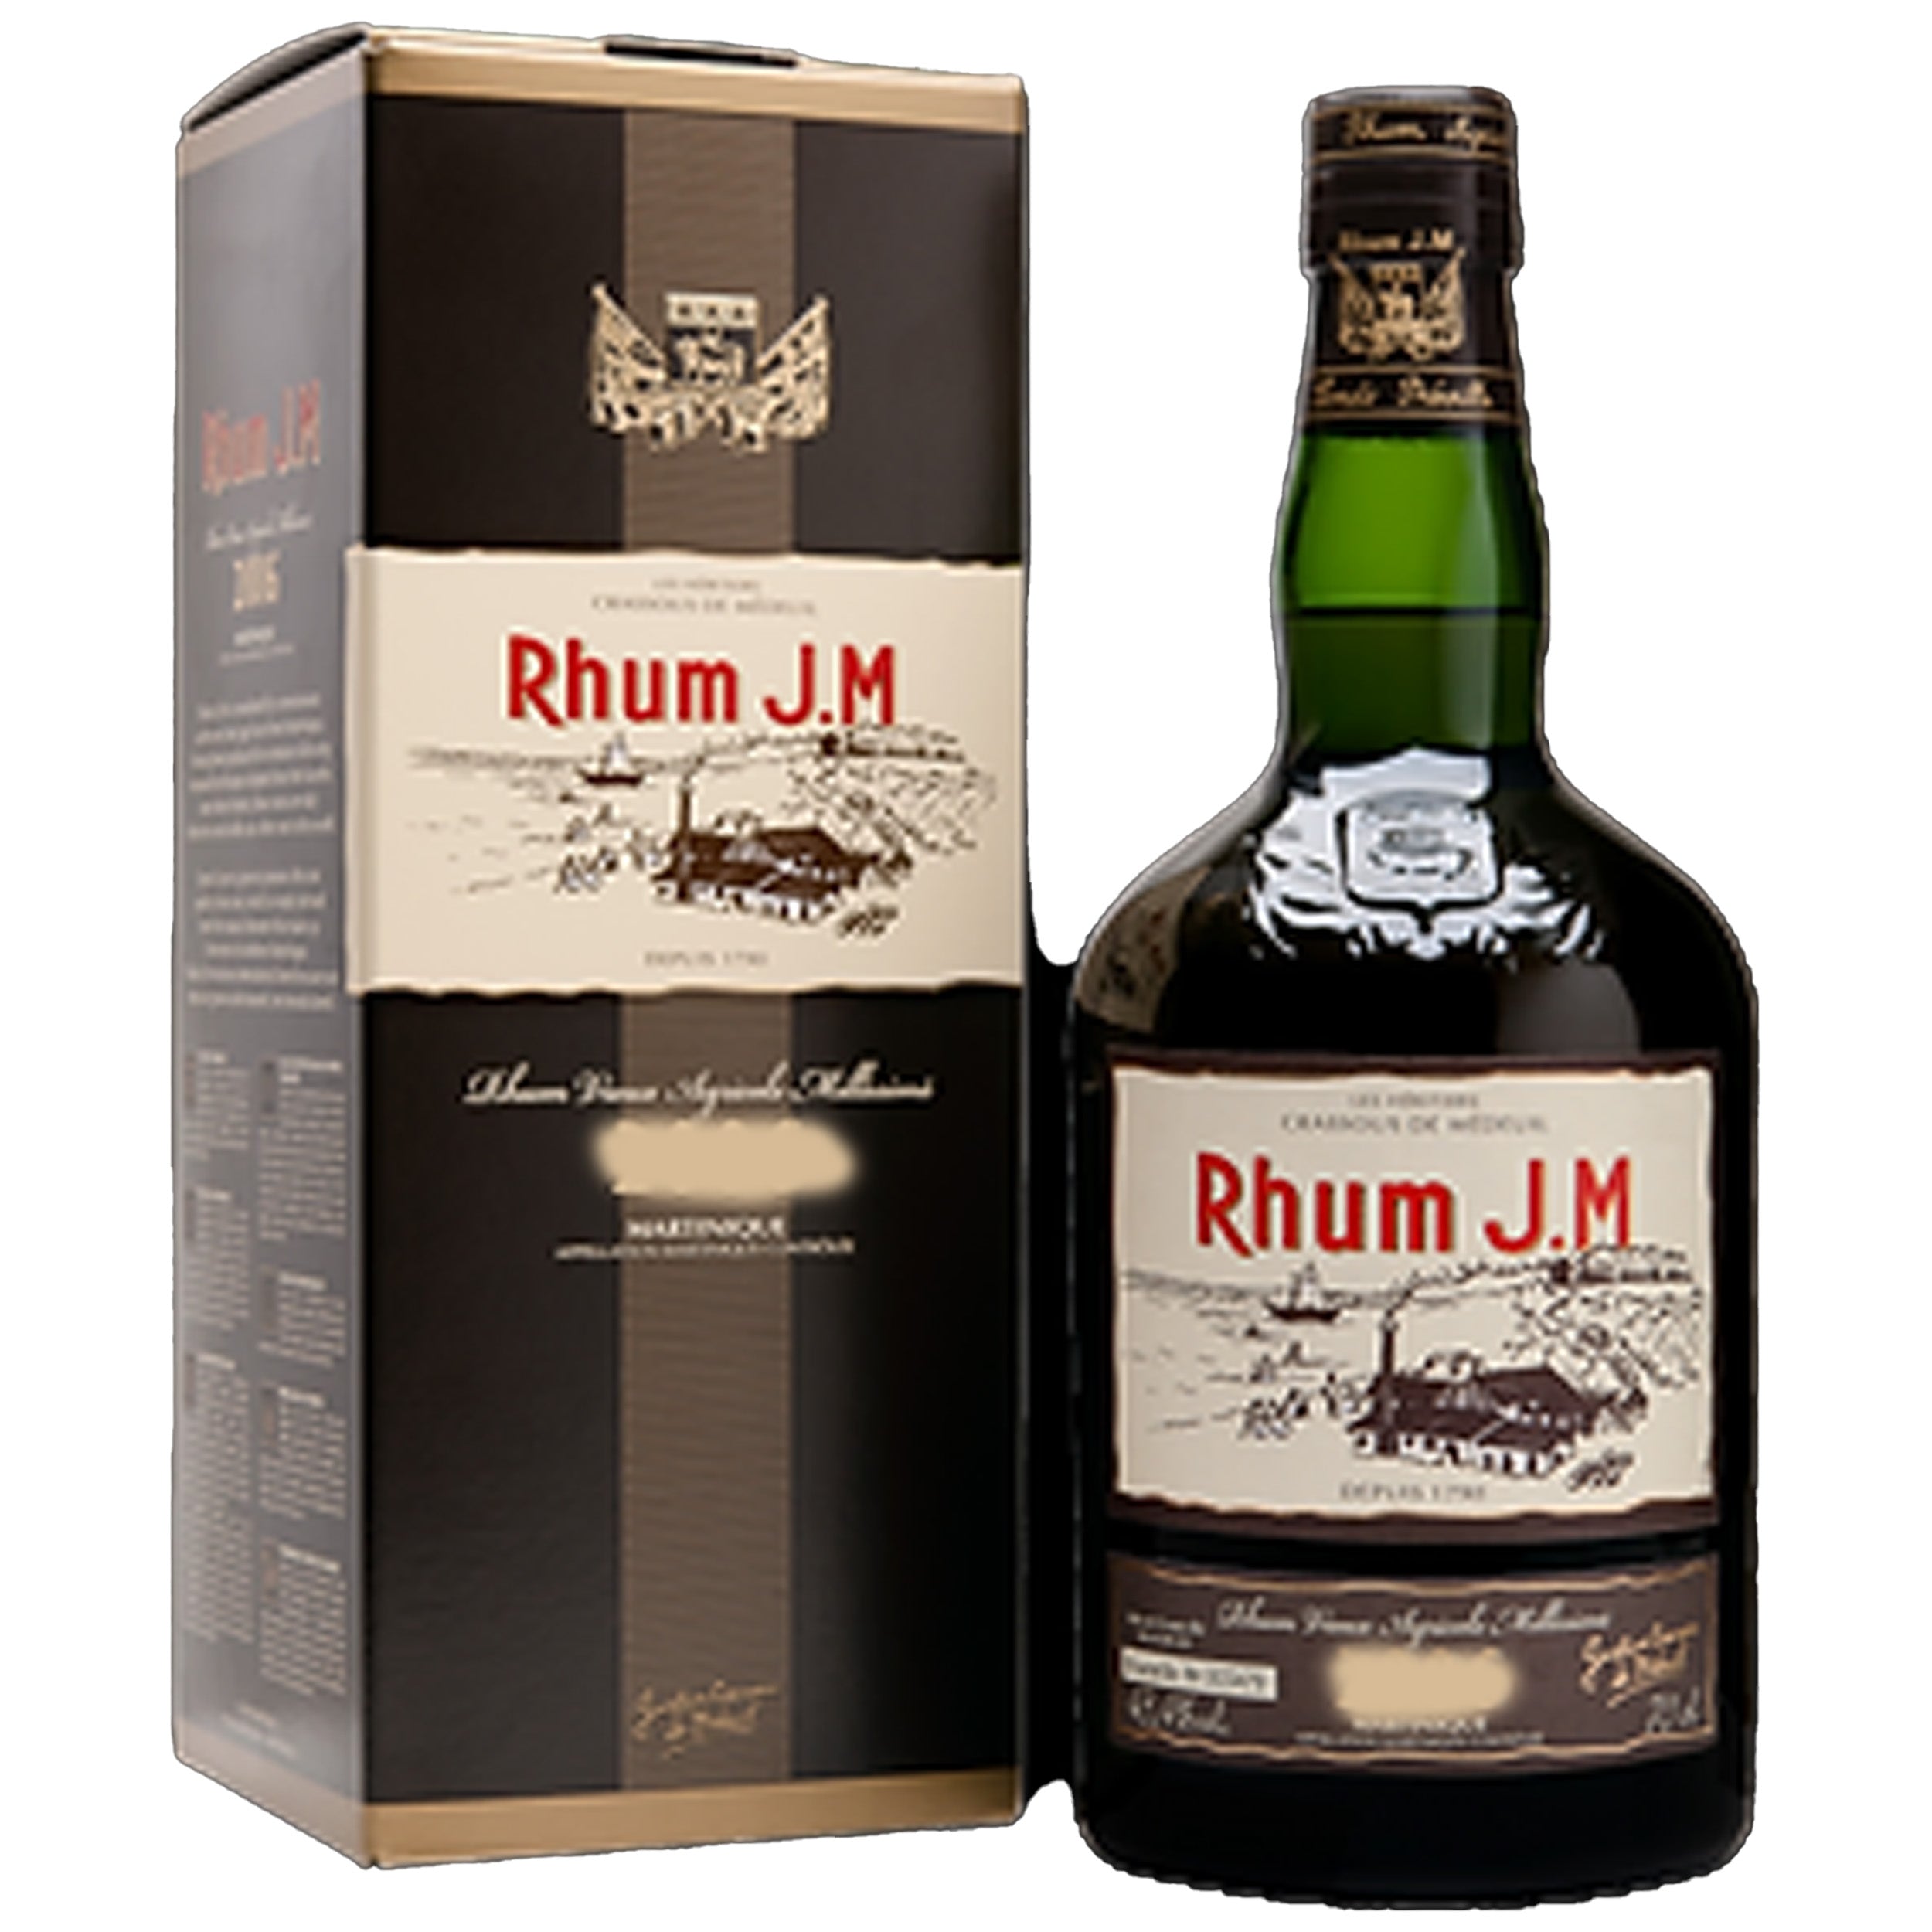 Rhum J.M 10 Year 2008 Rum